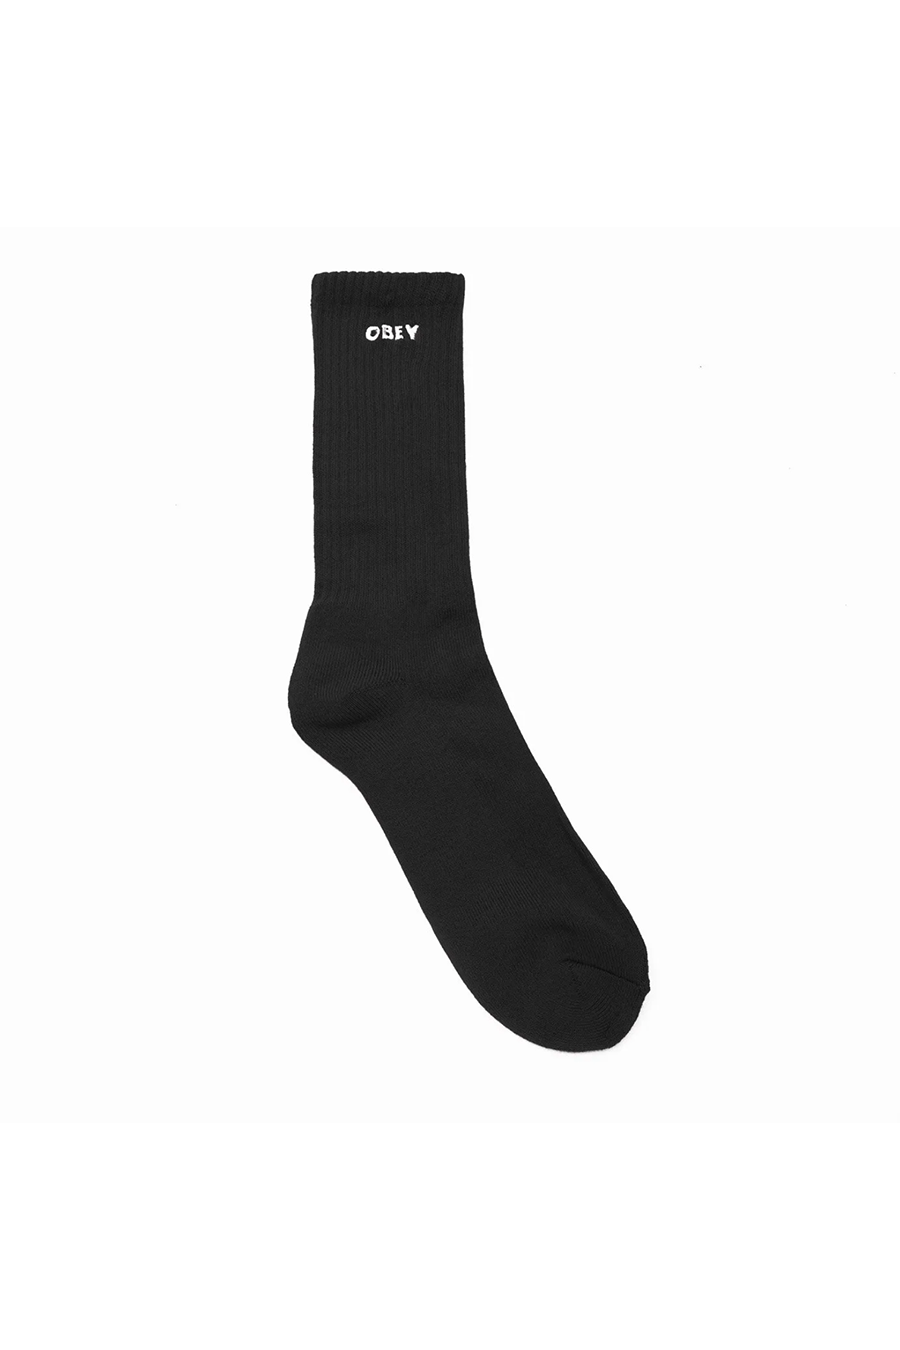 Bold Socks | Black - Main Image Number 1 of 1